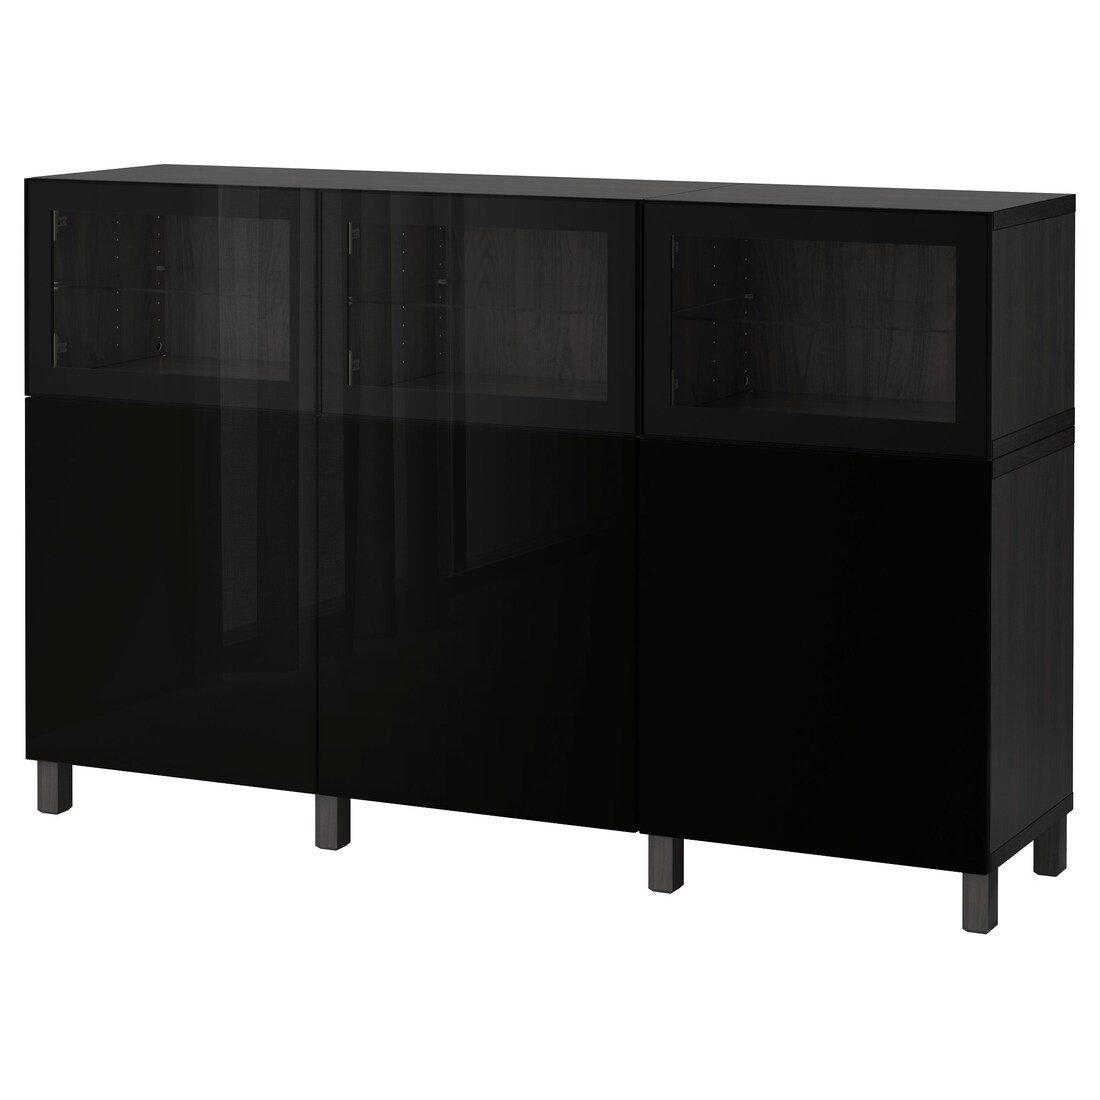 BESTÅ БЕСТО Комбинация для хранения с дверцами, черно-коричневый Selsviken / Glassvik глянцевый / черное прозрачное стекло, 180x42x112 см